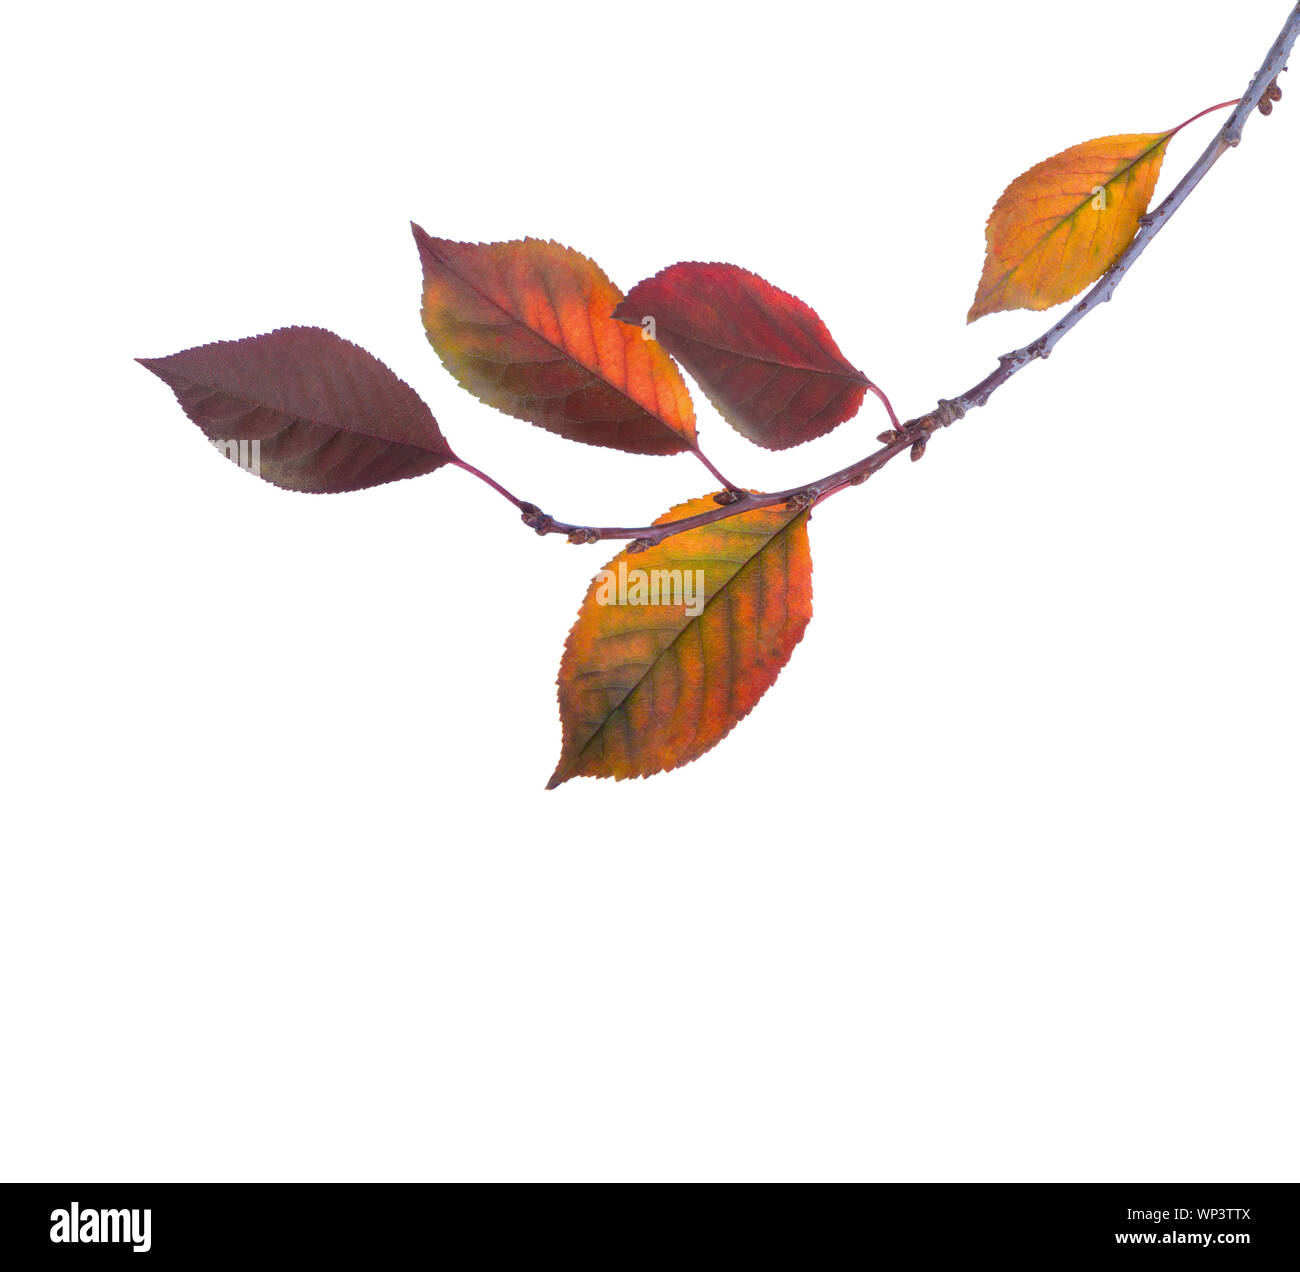 Cherry branch avec motif de feuilles d'automne isolé sur fond blanc. Prunus cerasus. Banque D'Images